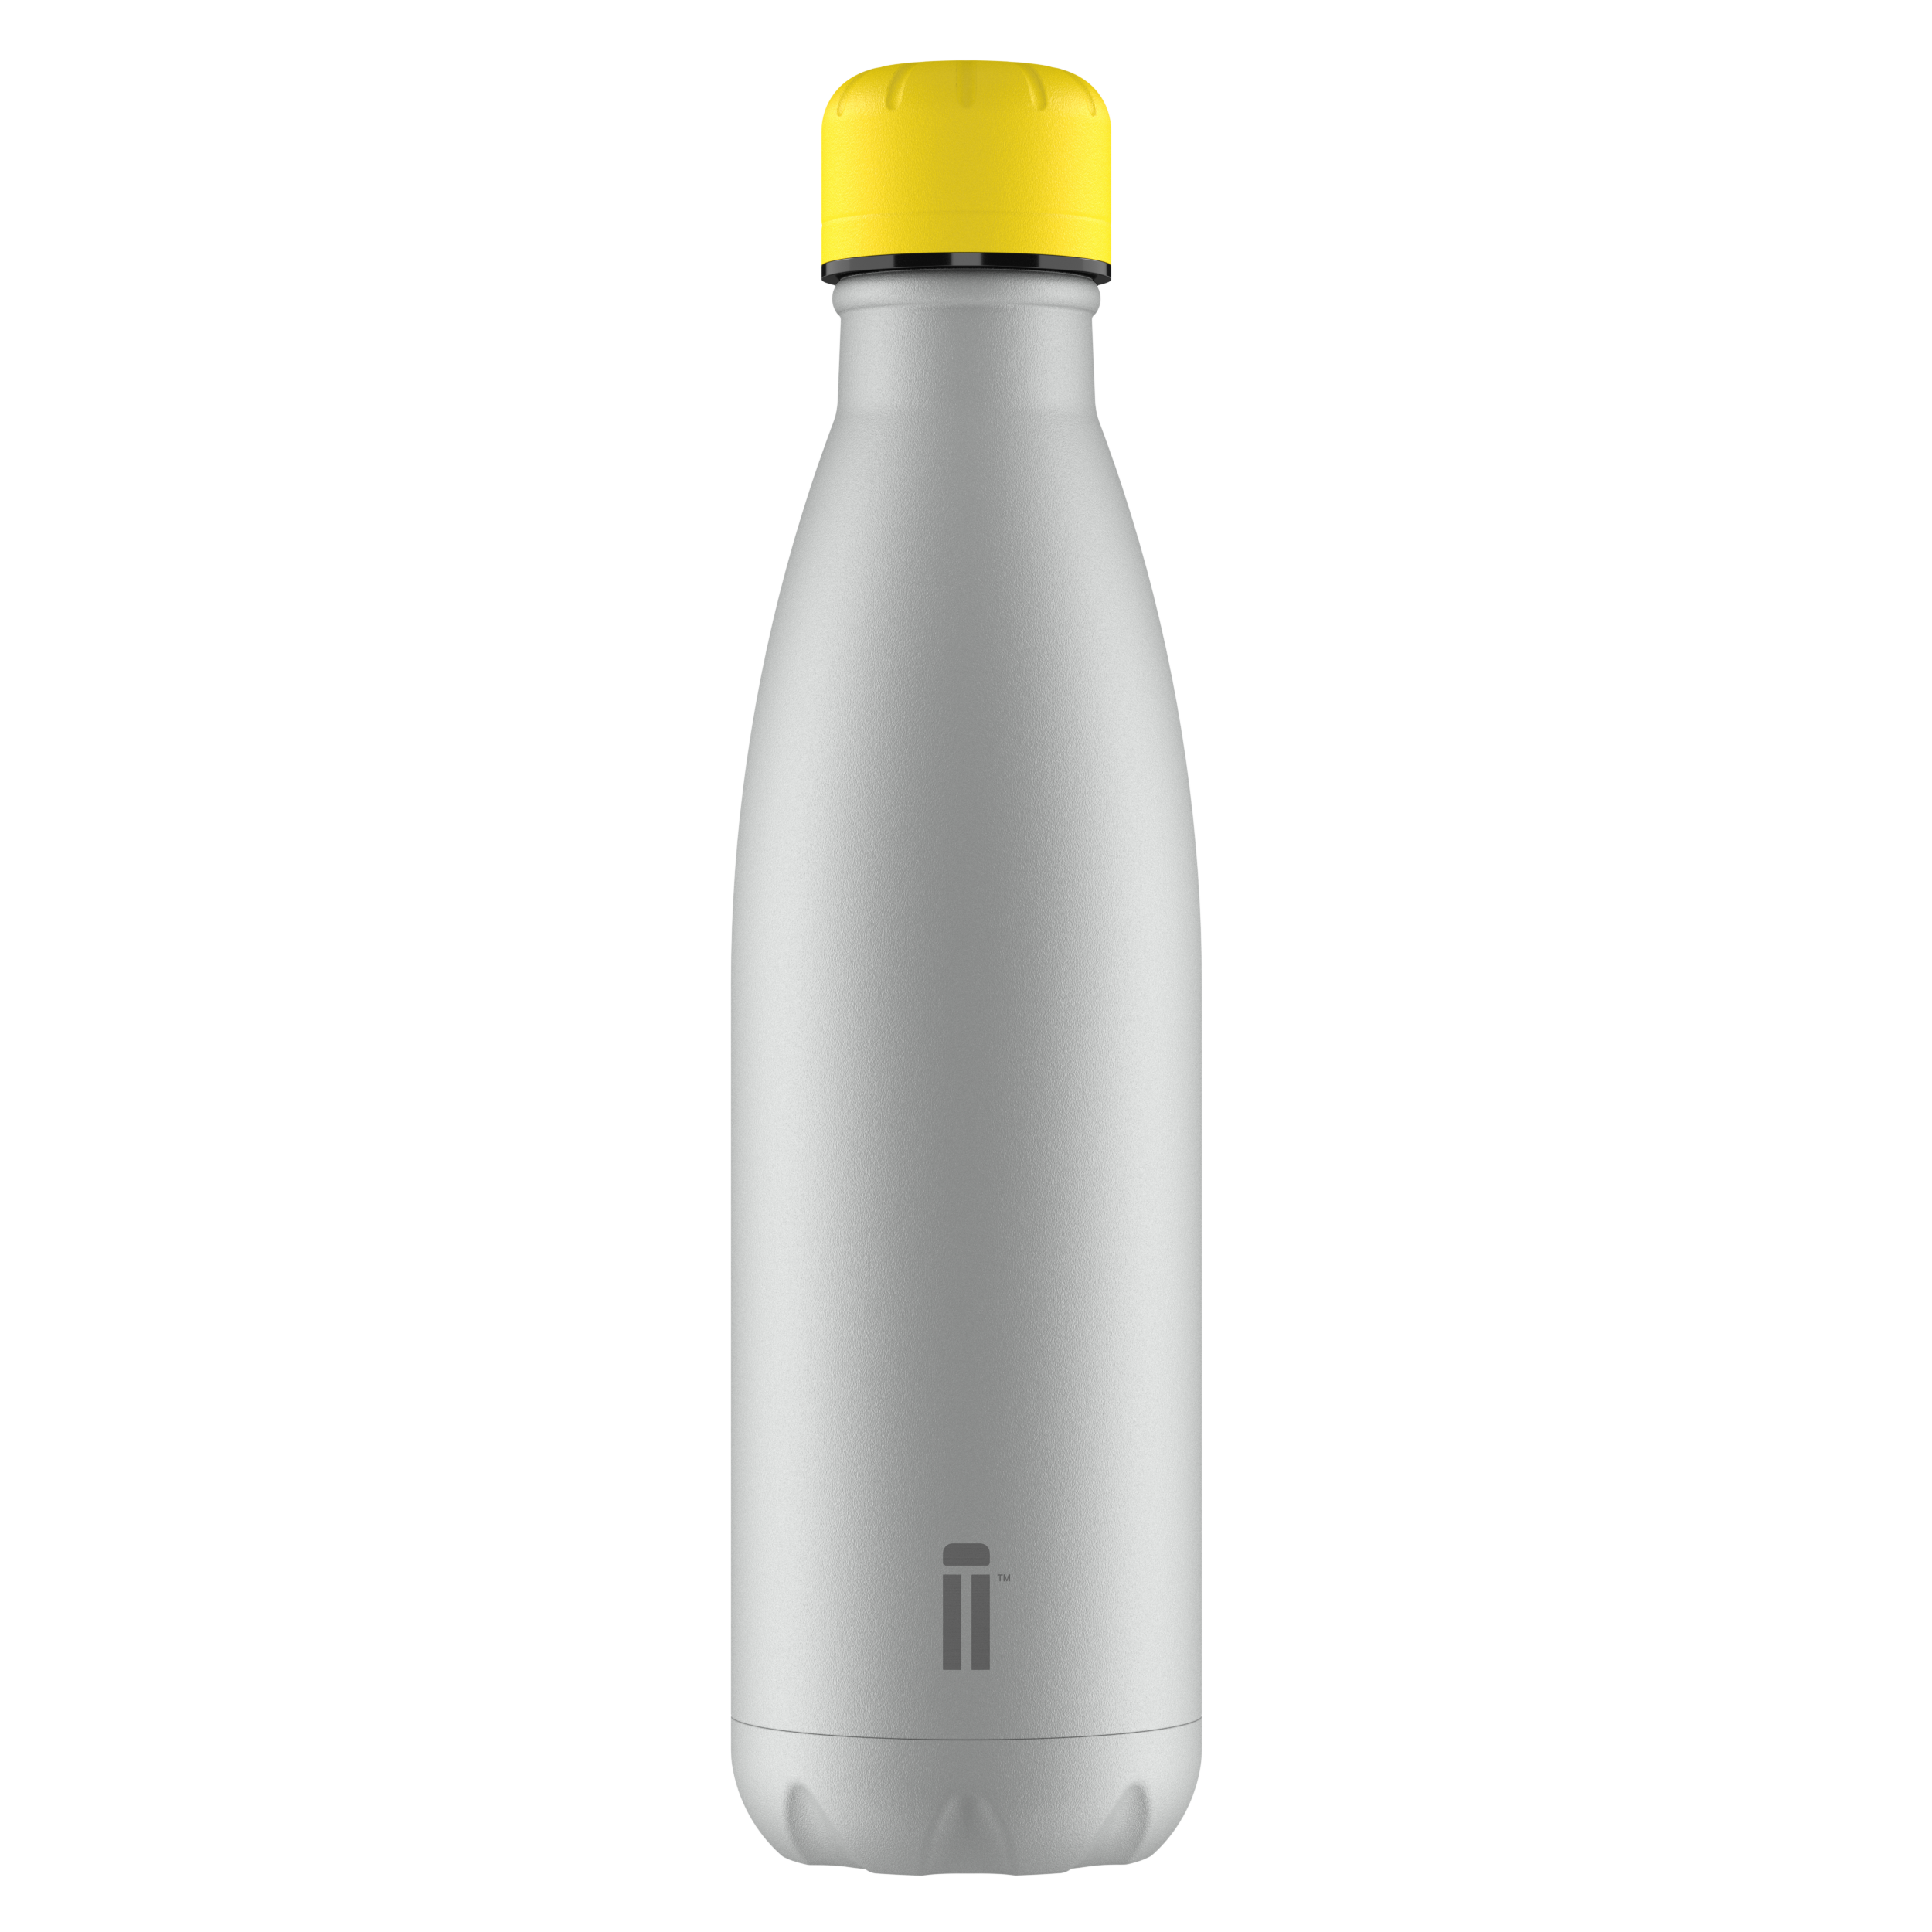 Seal Grey Water Bottle